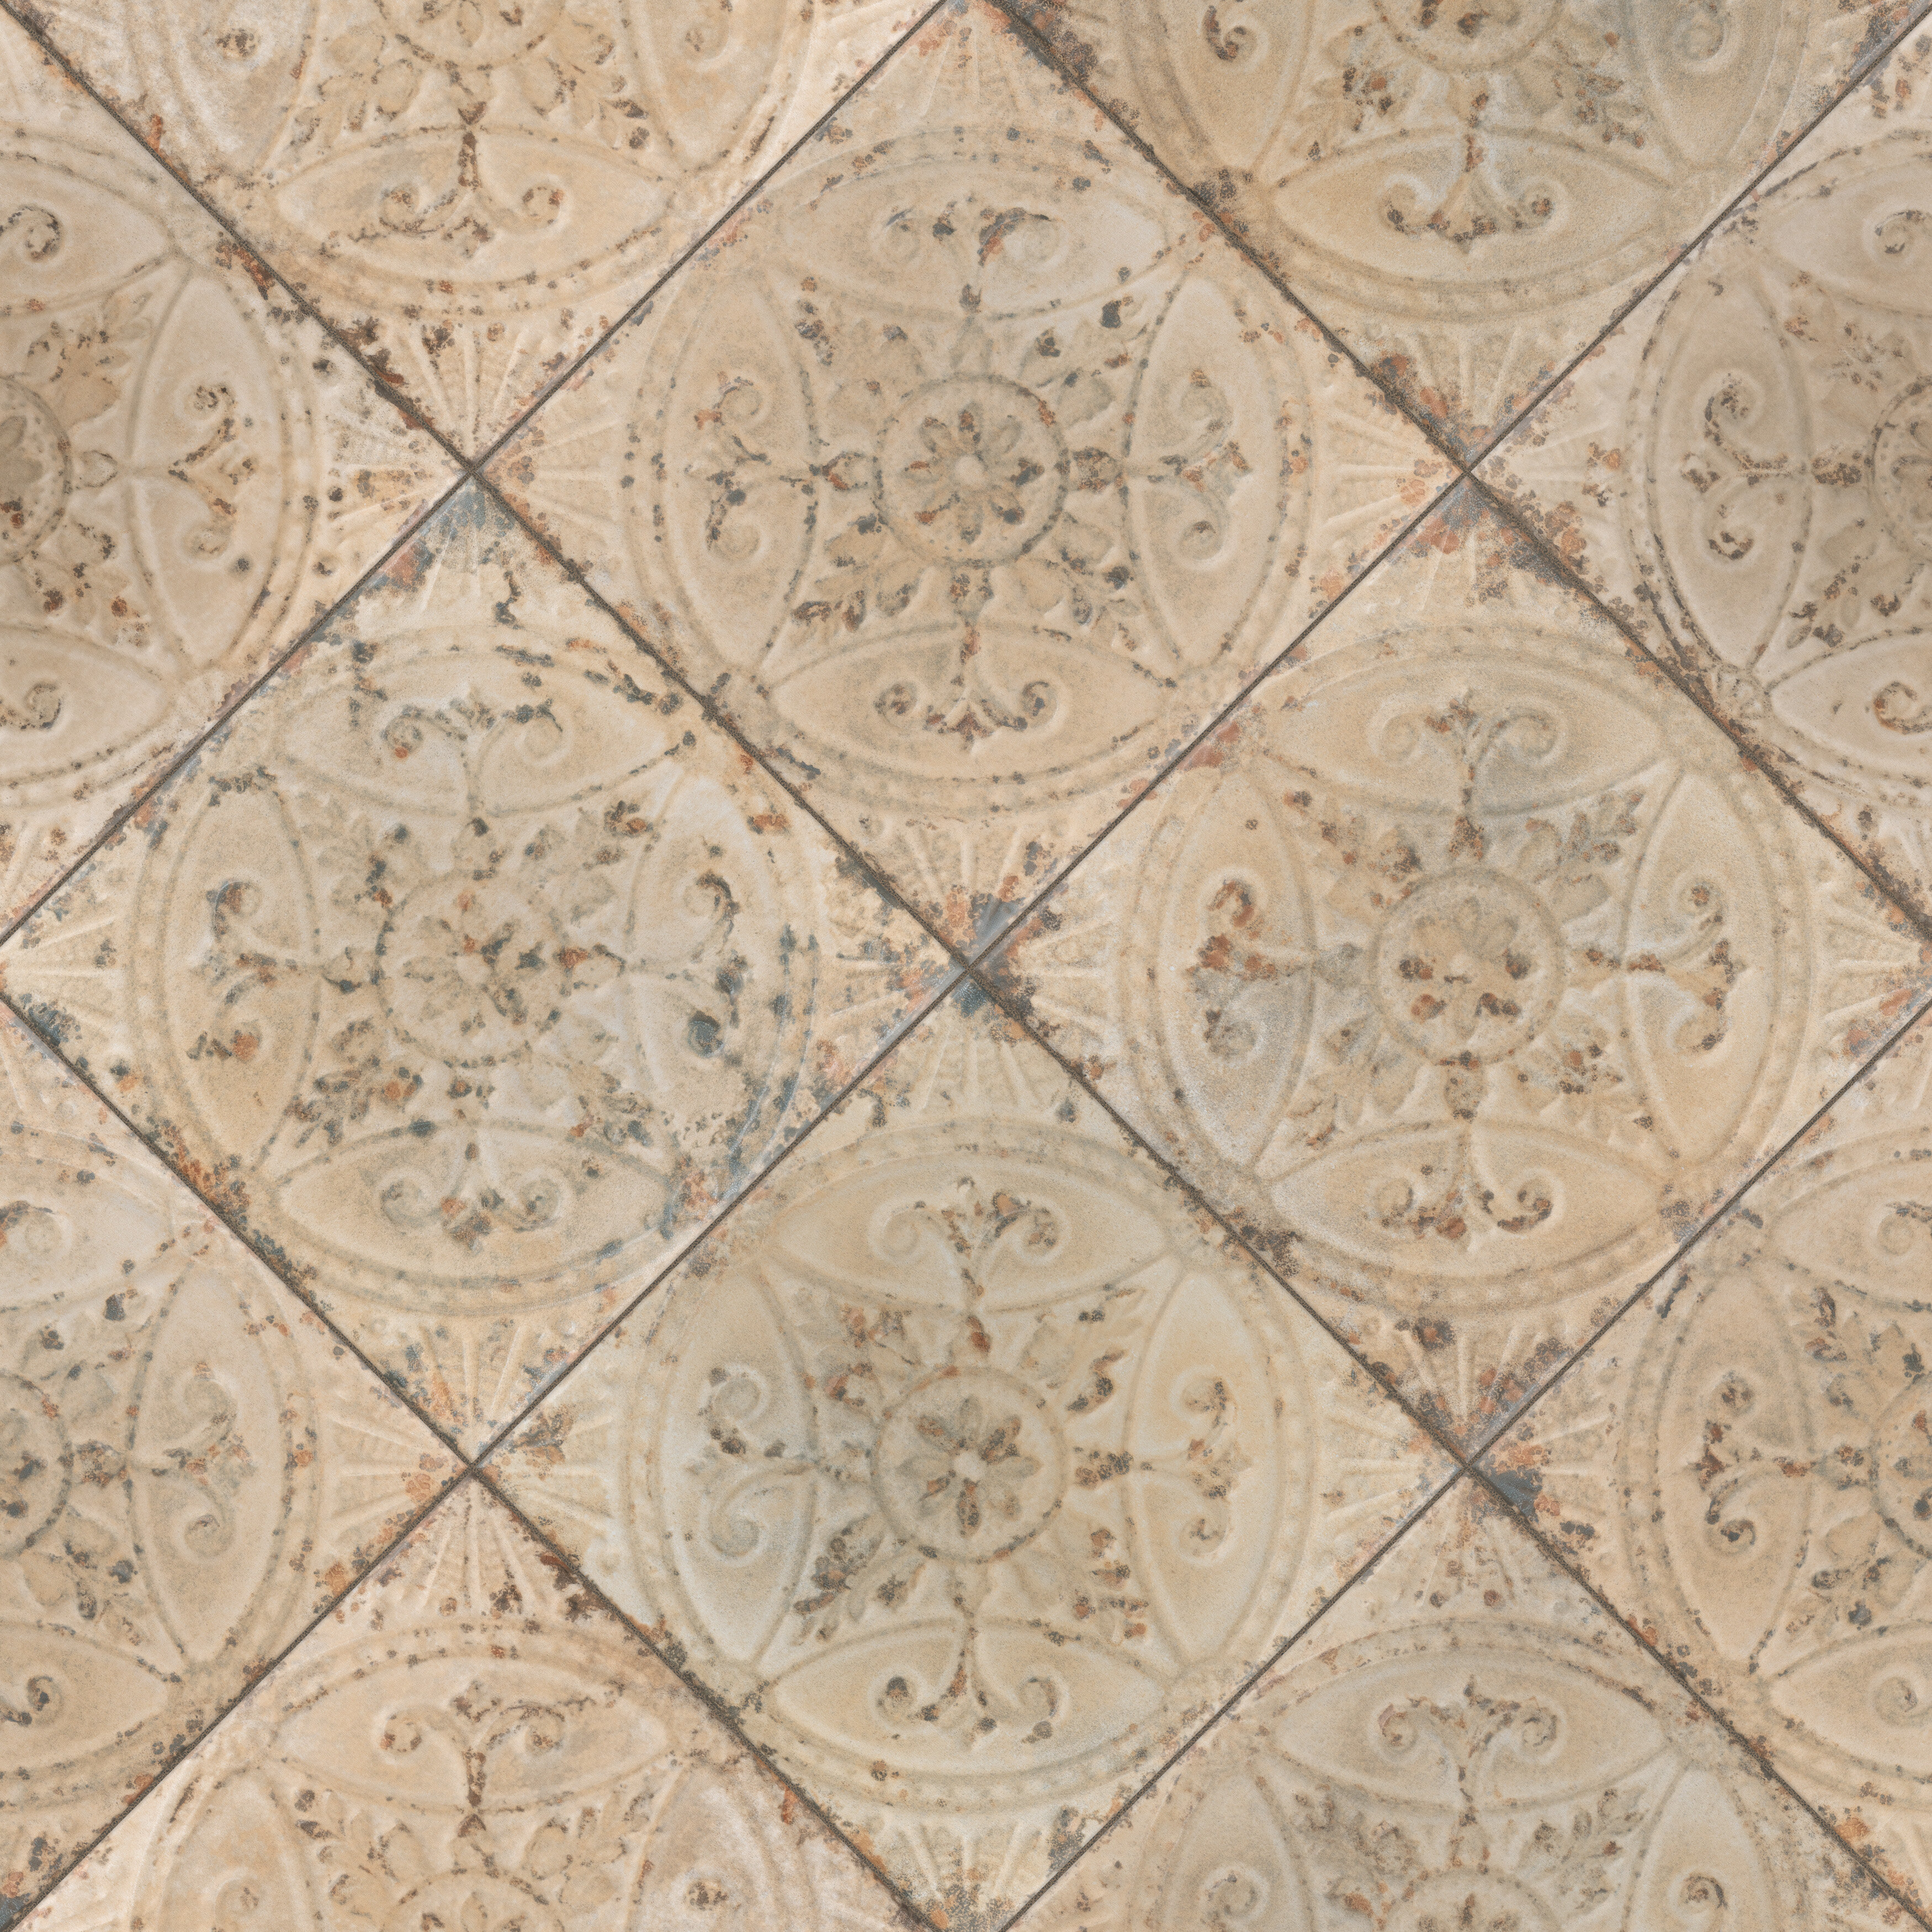 https://assets.wfcdn.com/im/46452720/compr-r85/1236/123613314/saja-vintage-13-x-13-ceramic-patterned-wall-floor-tile.jpg